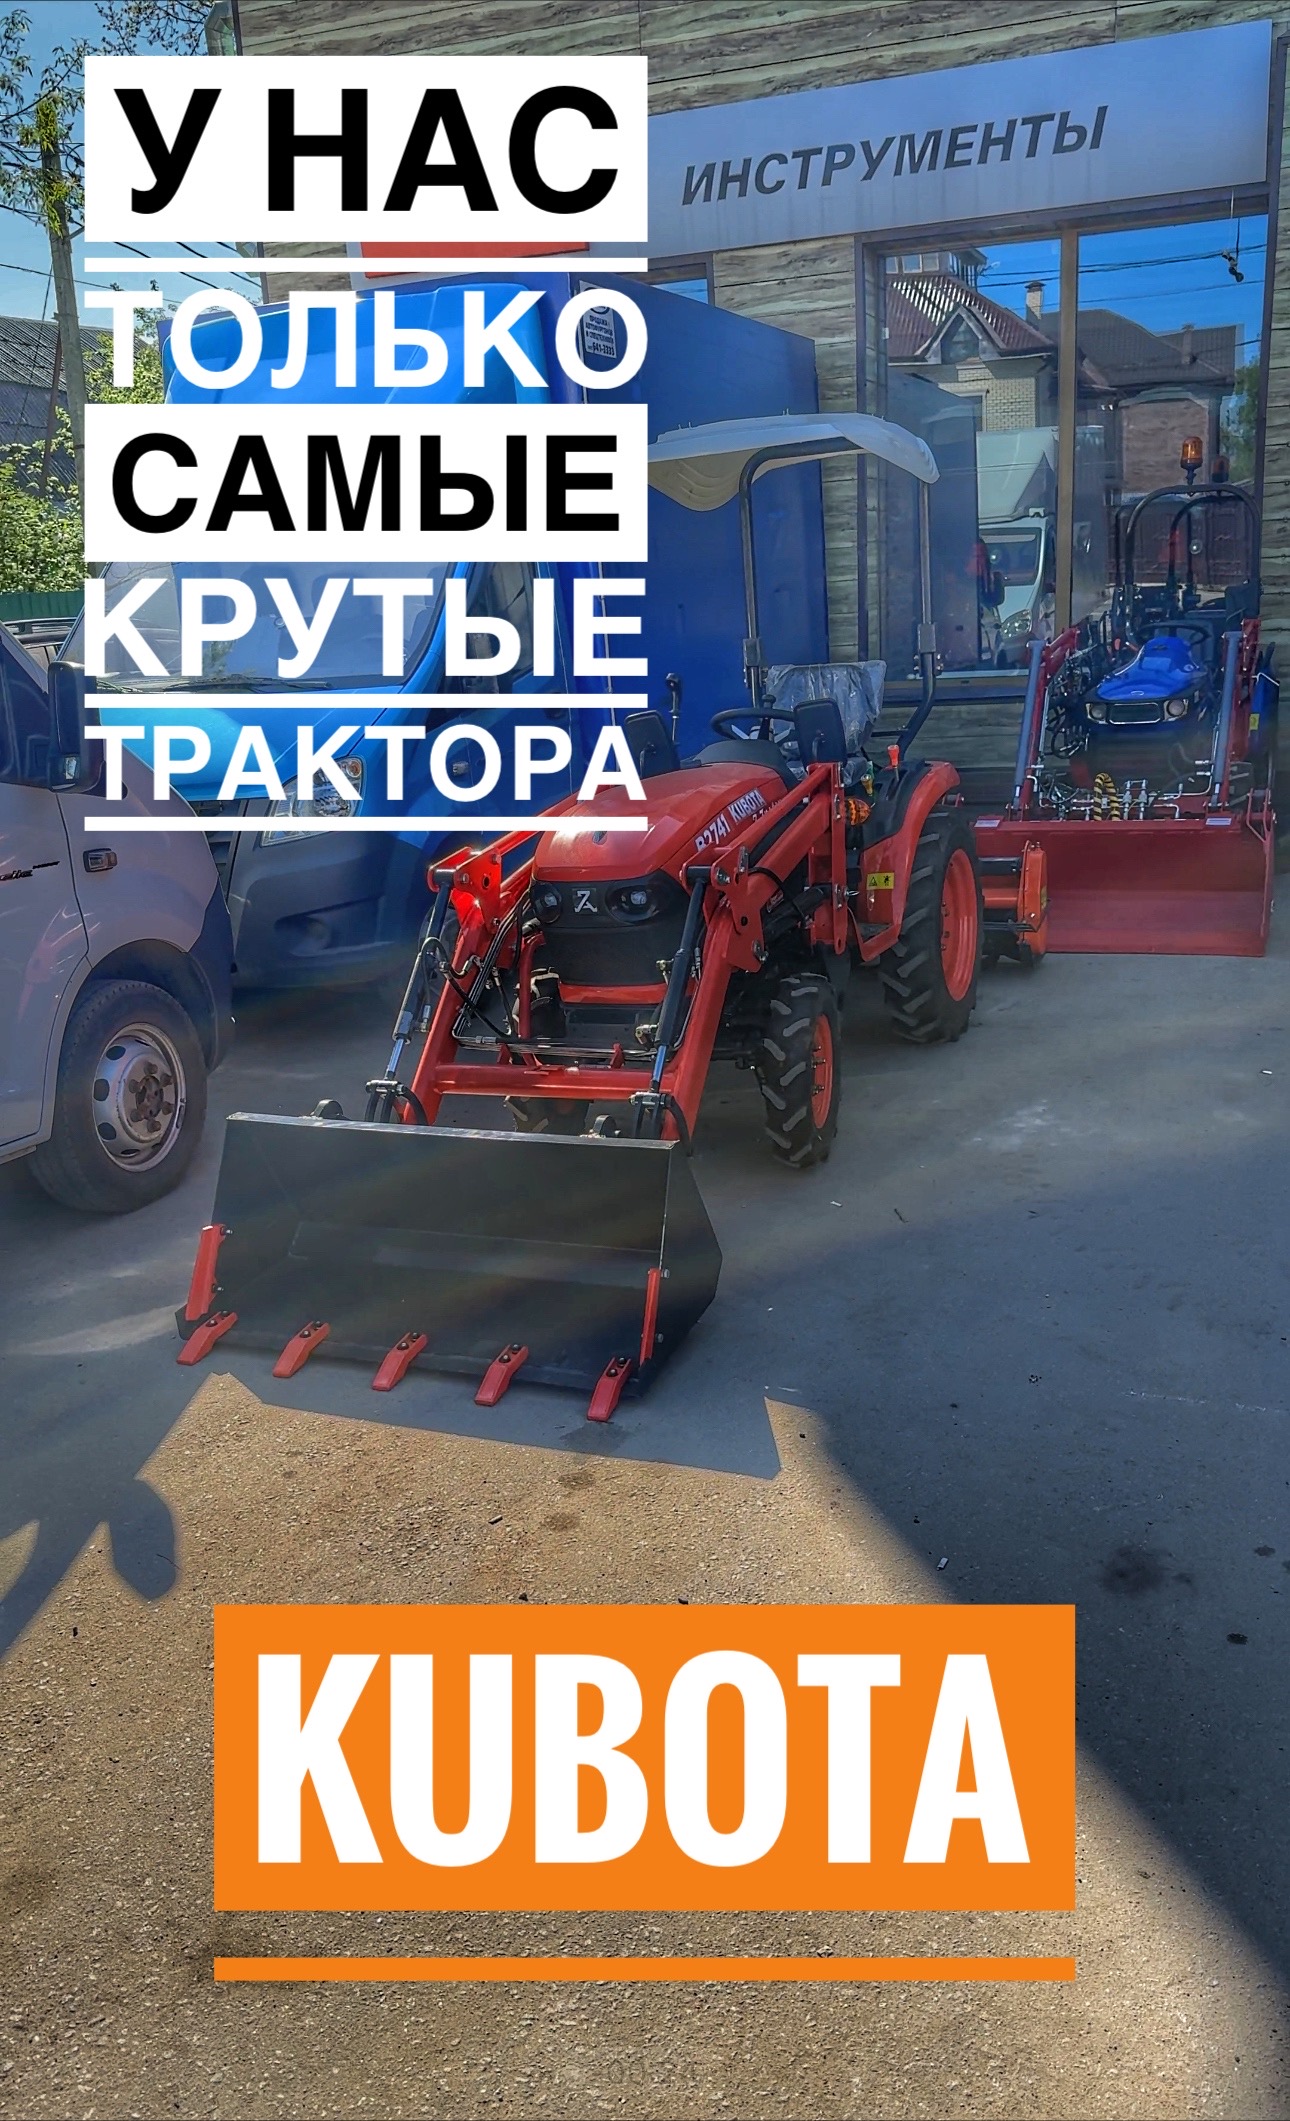 Вам нужен трактор? +7-925-081-03-33 поможем! #минитрактор #трактор #tractor #kubota #купитьтрактор